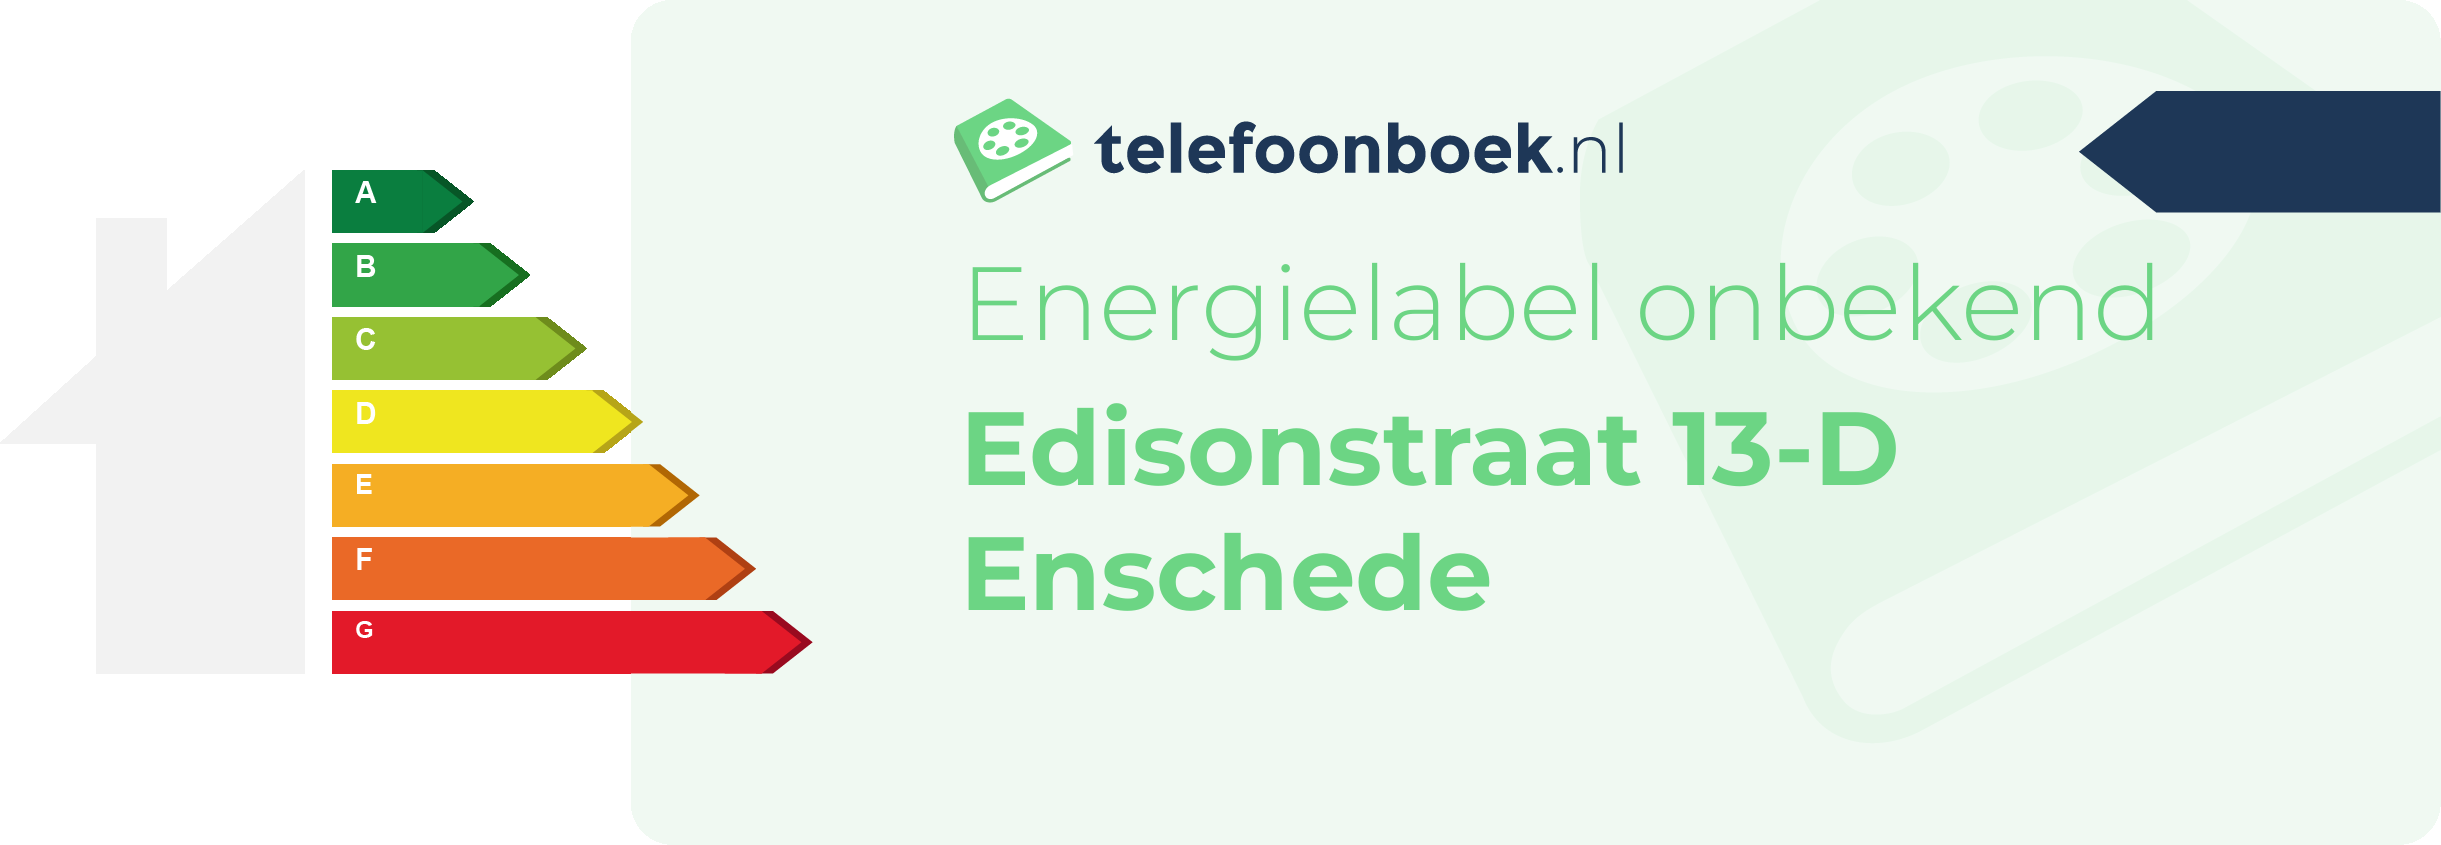 Energielabel Edisonstraat 13-D Enschede